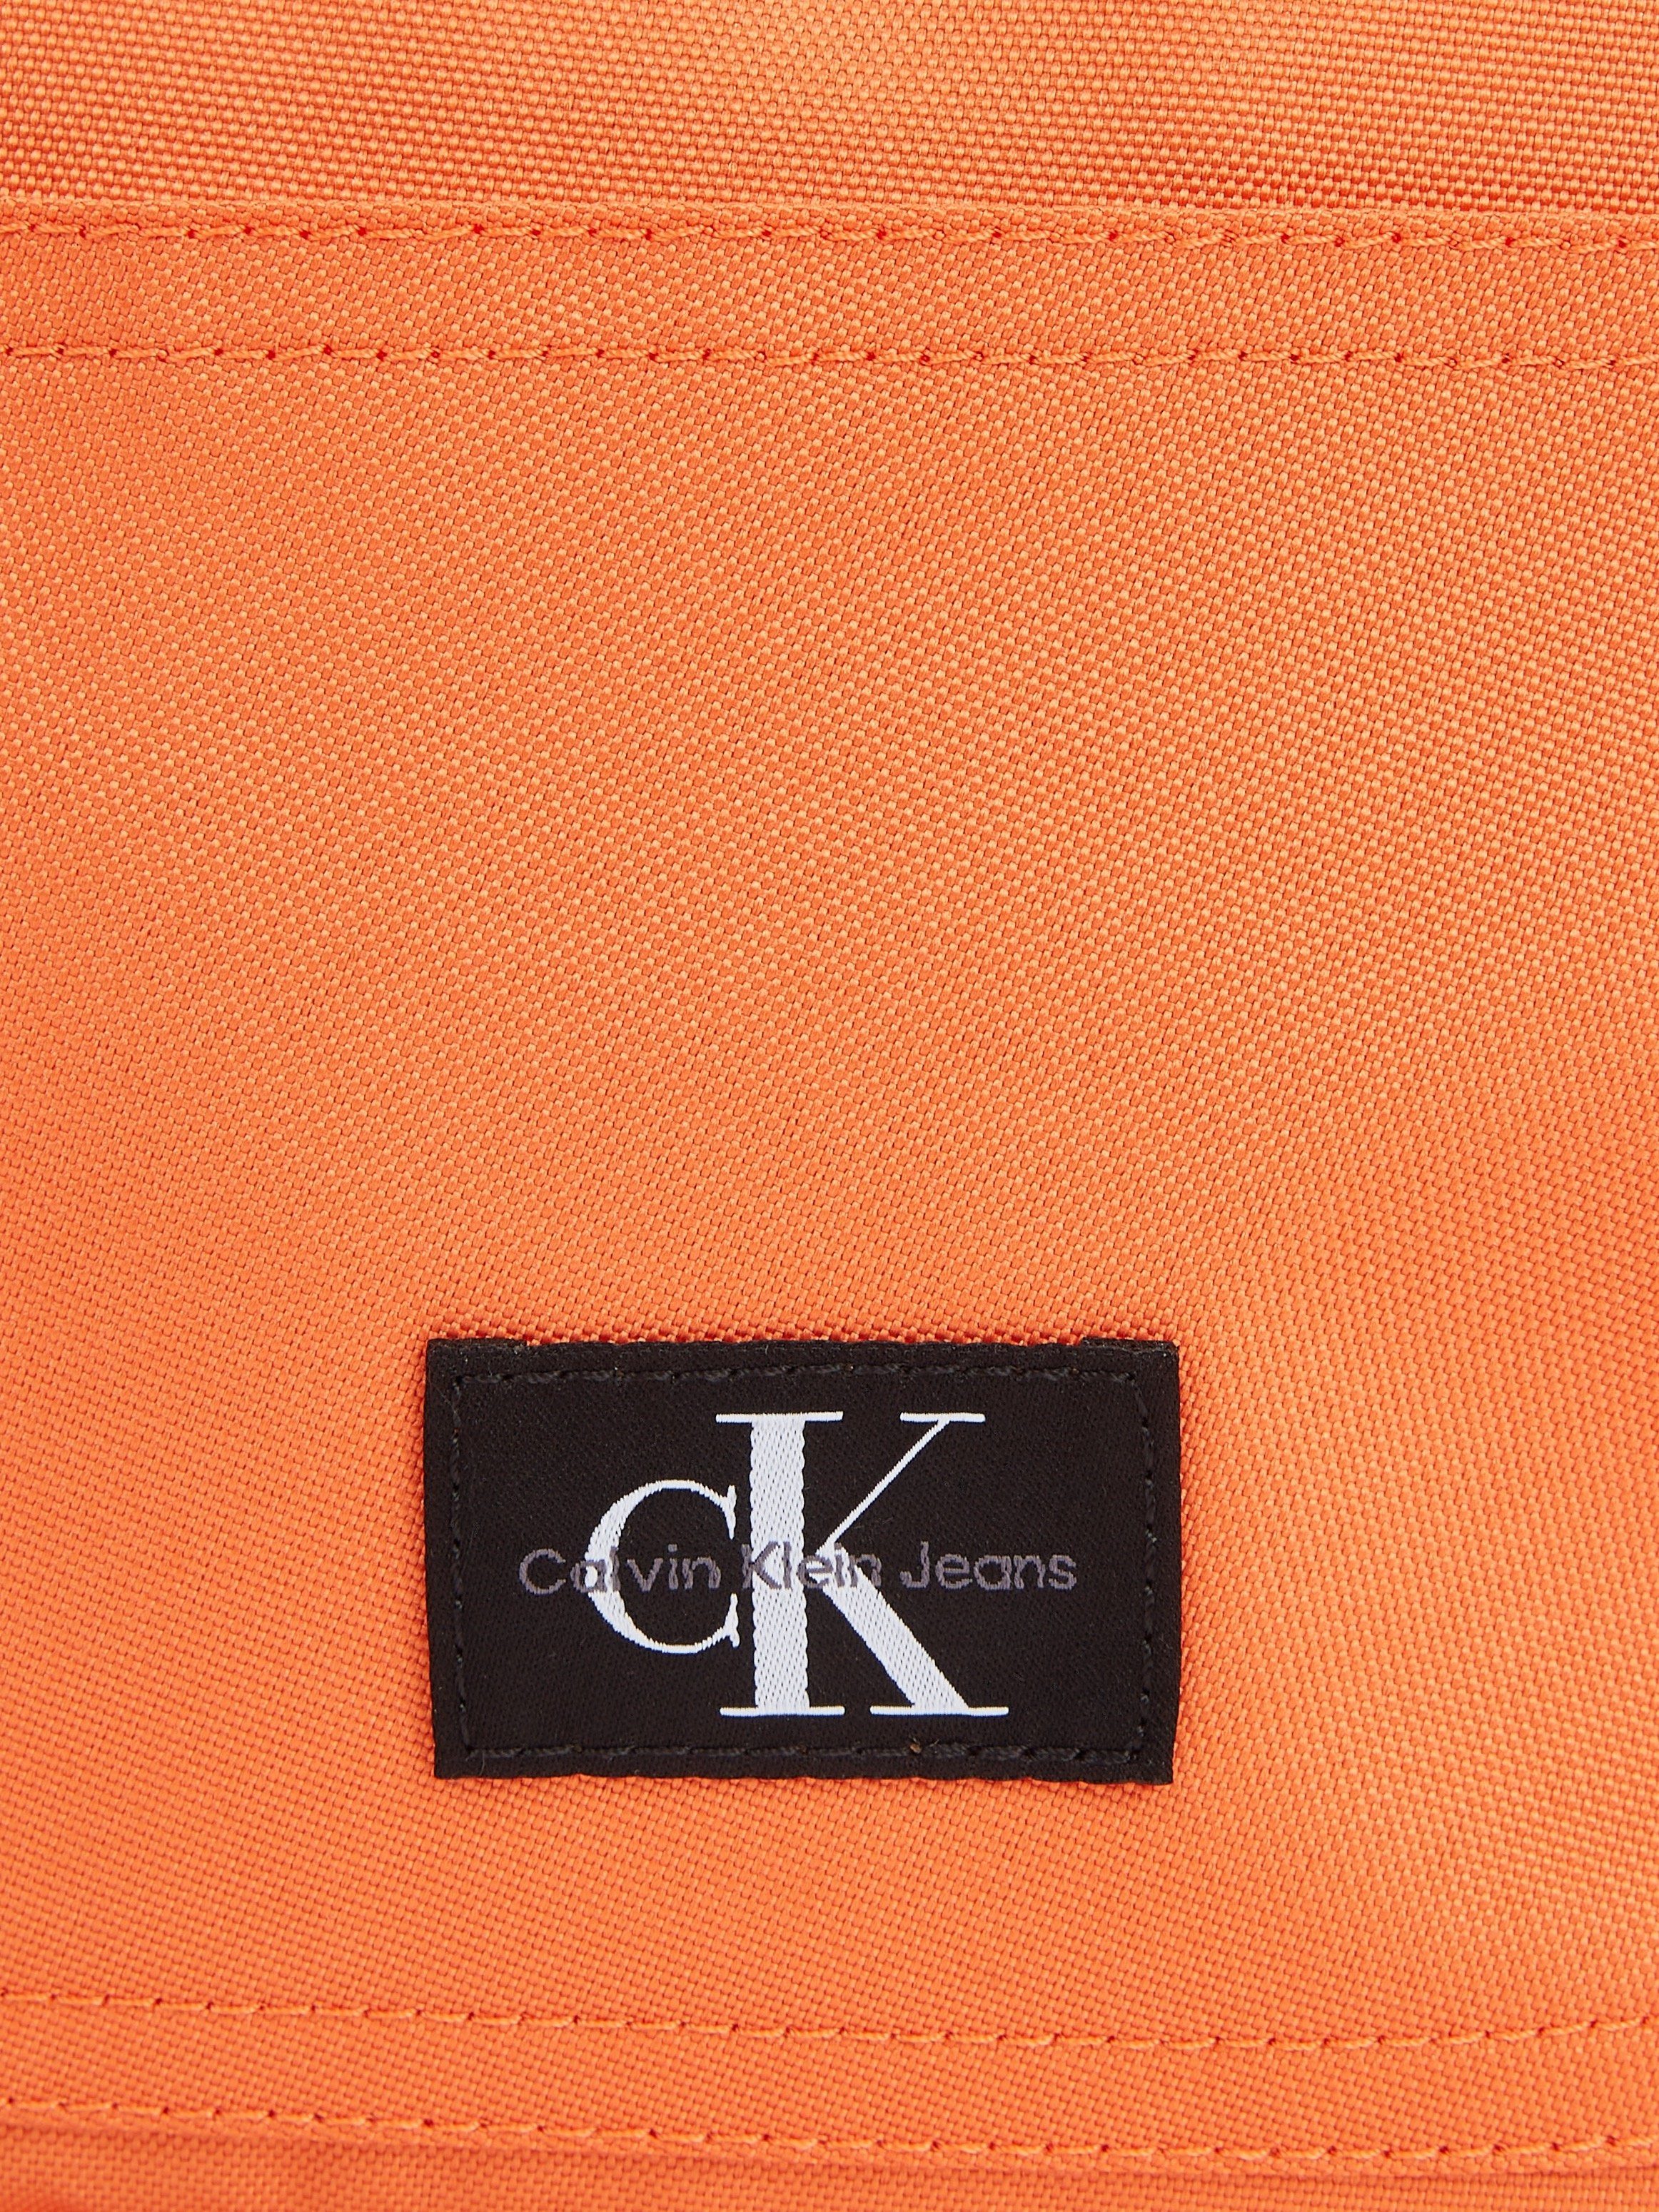 Calvin Klein Jeans Cityrucksack BP40 Design SPORT CAMPUS koralle ESSENTIALS in dezentem W